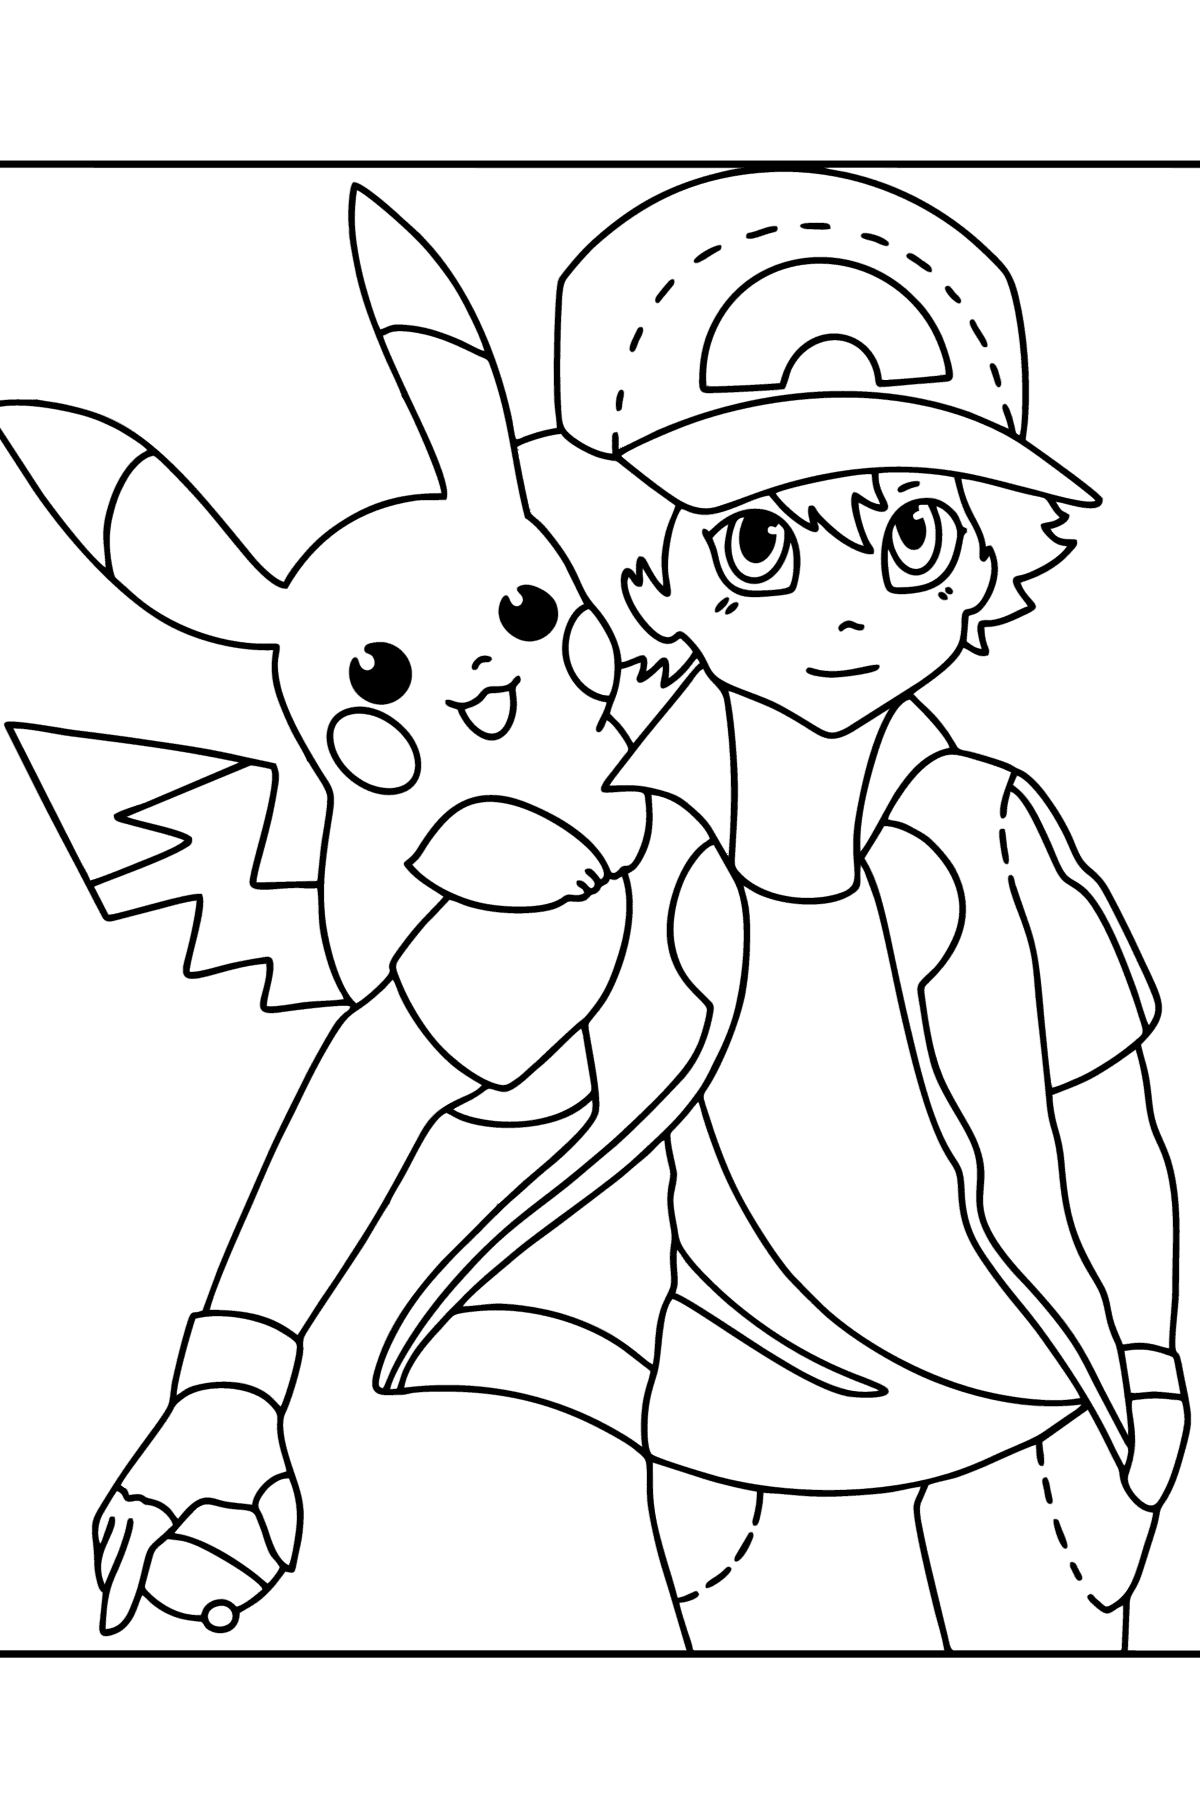 Tegning til farvning Pokémon XY Ash Ketchum - Tegninger til farvelægning for børn